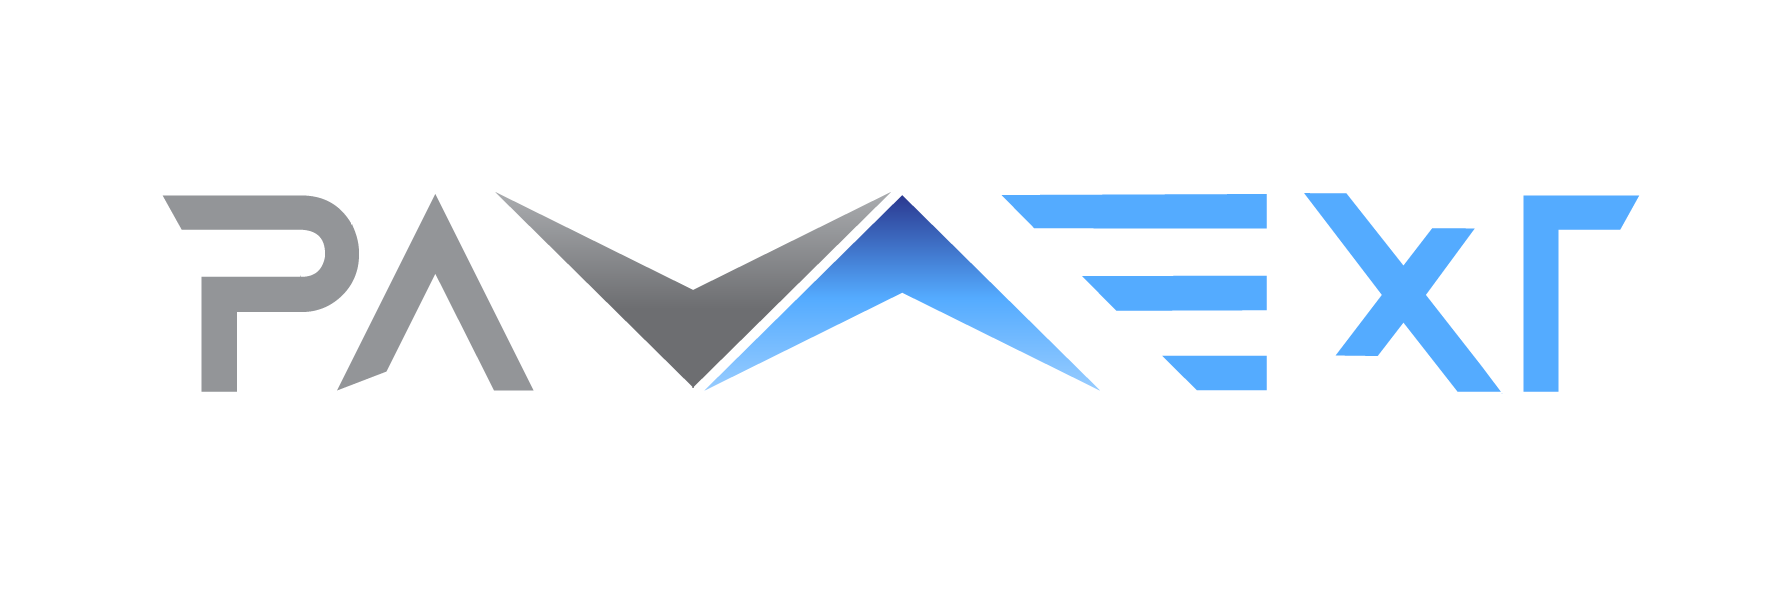 logotipo da marca paverx